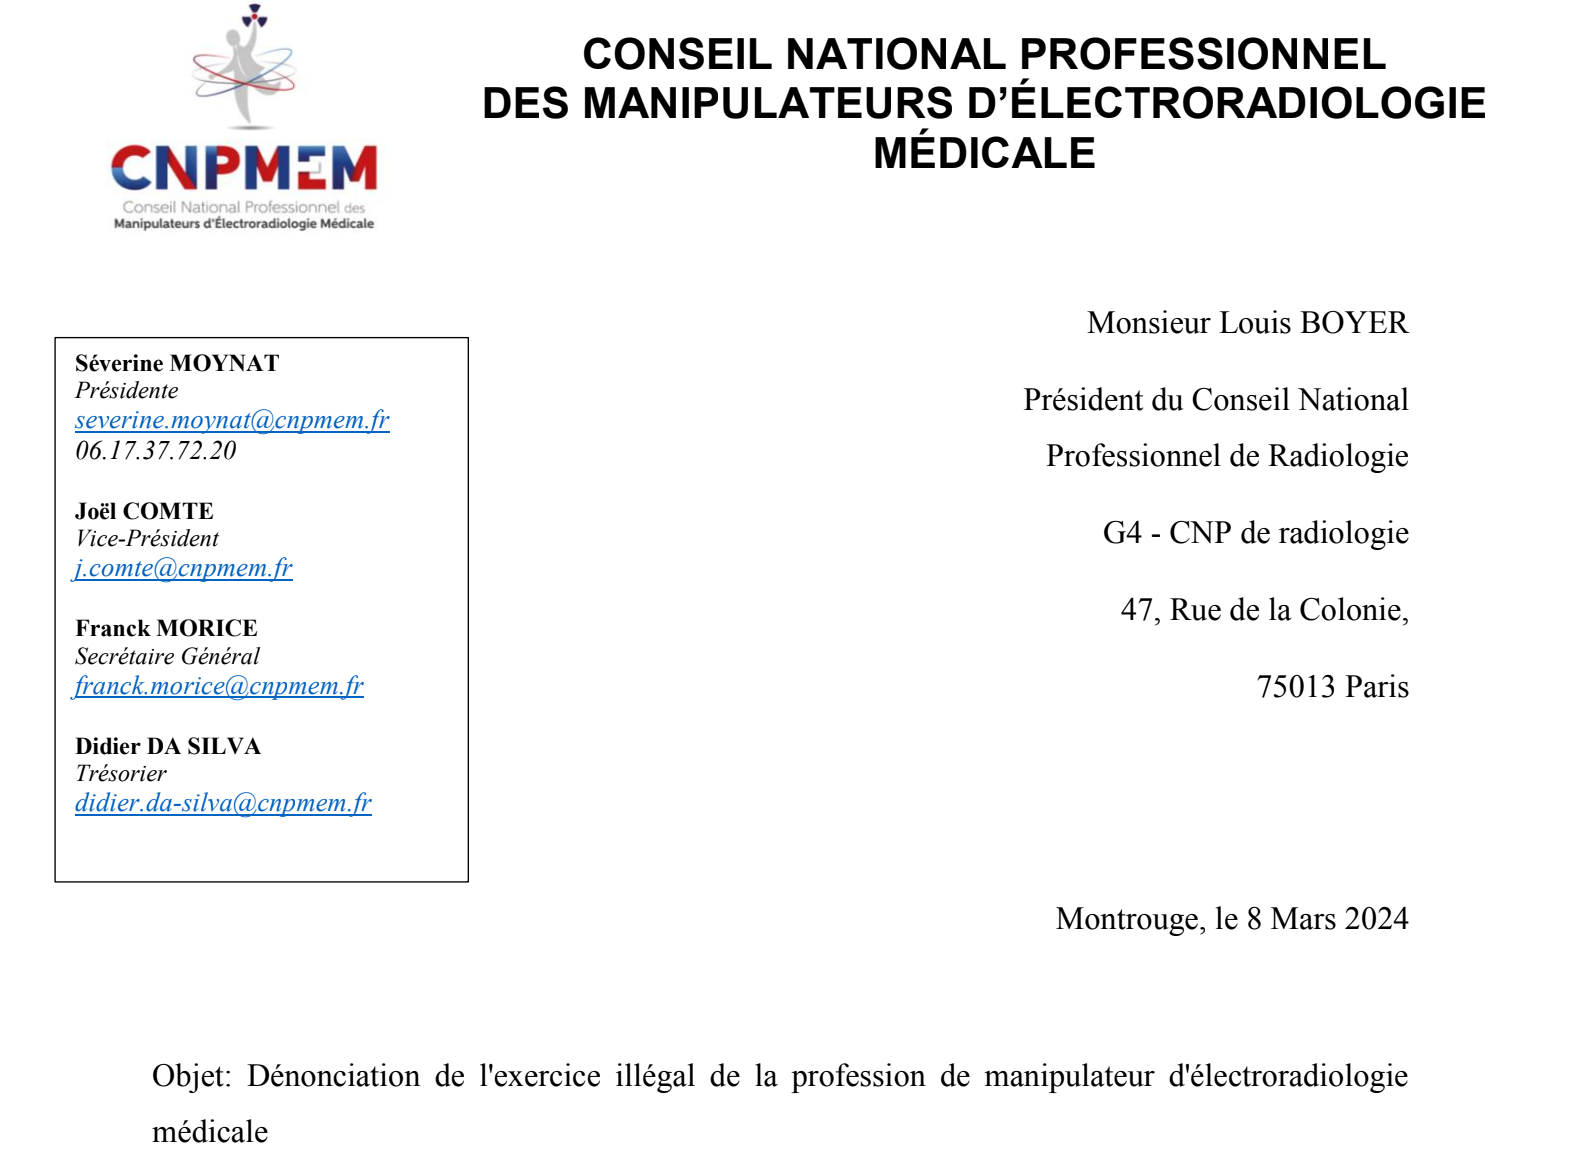 Exercice illégal de la profession de MERM : le CNPMEM interpelle les responsables de la radiologie française